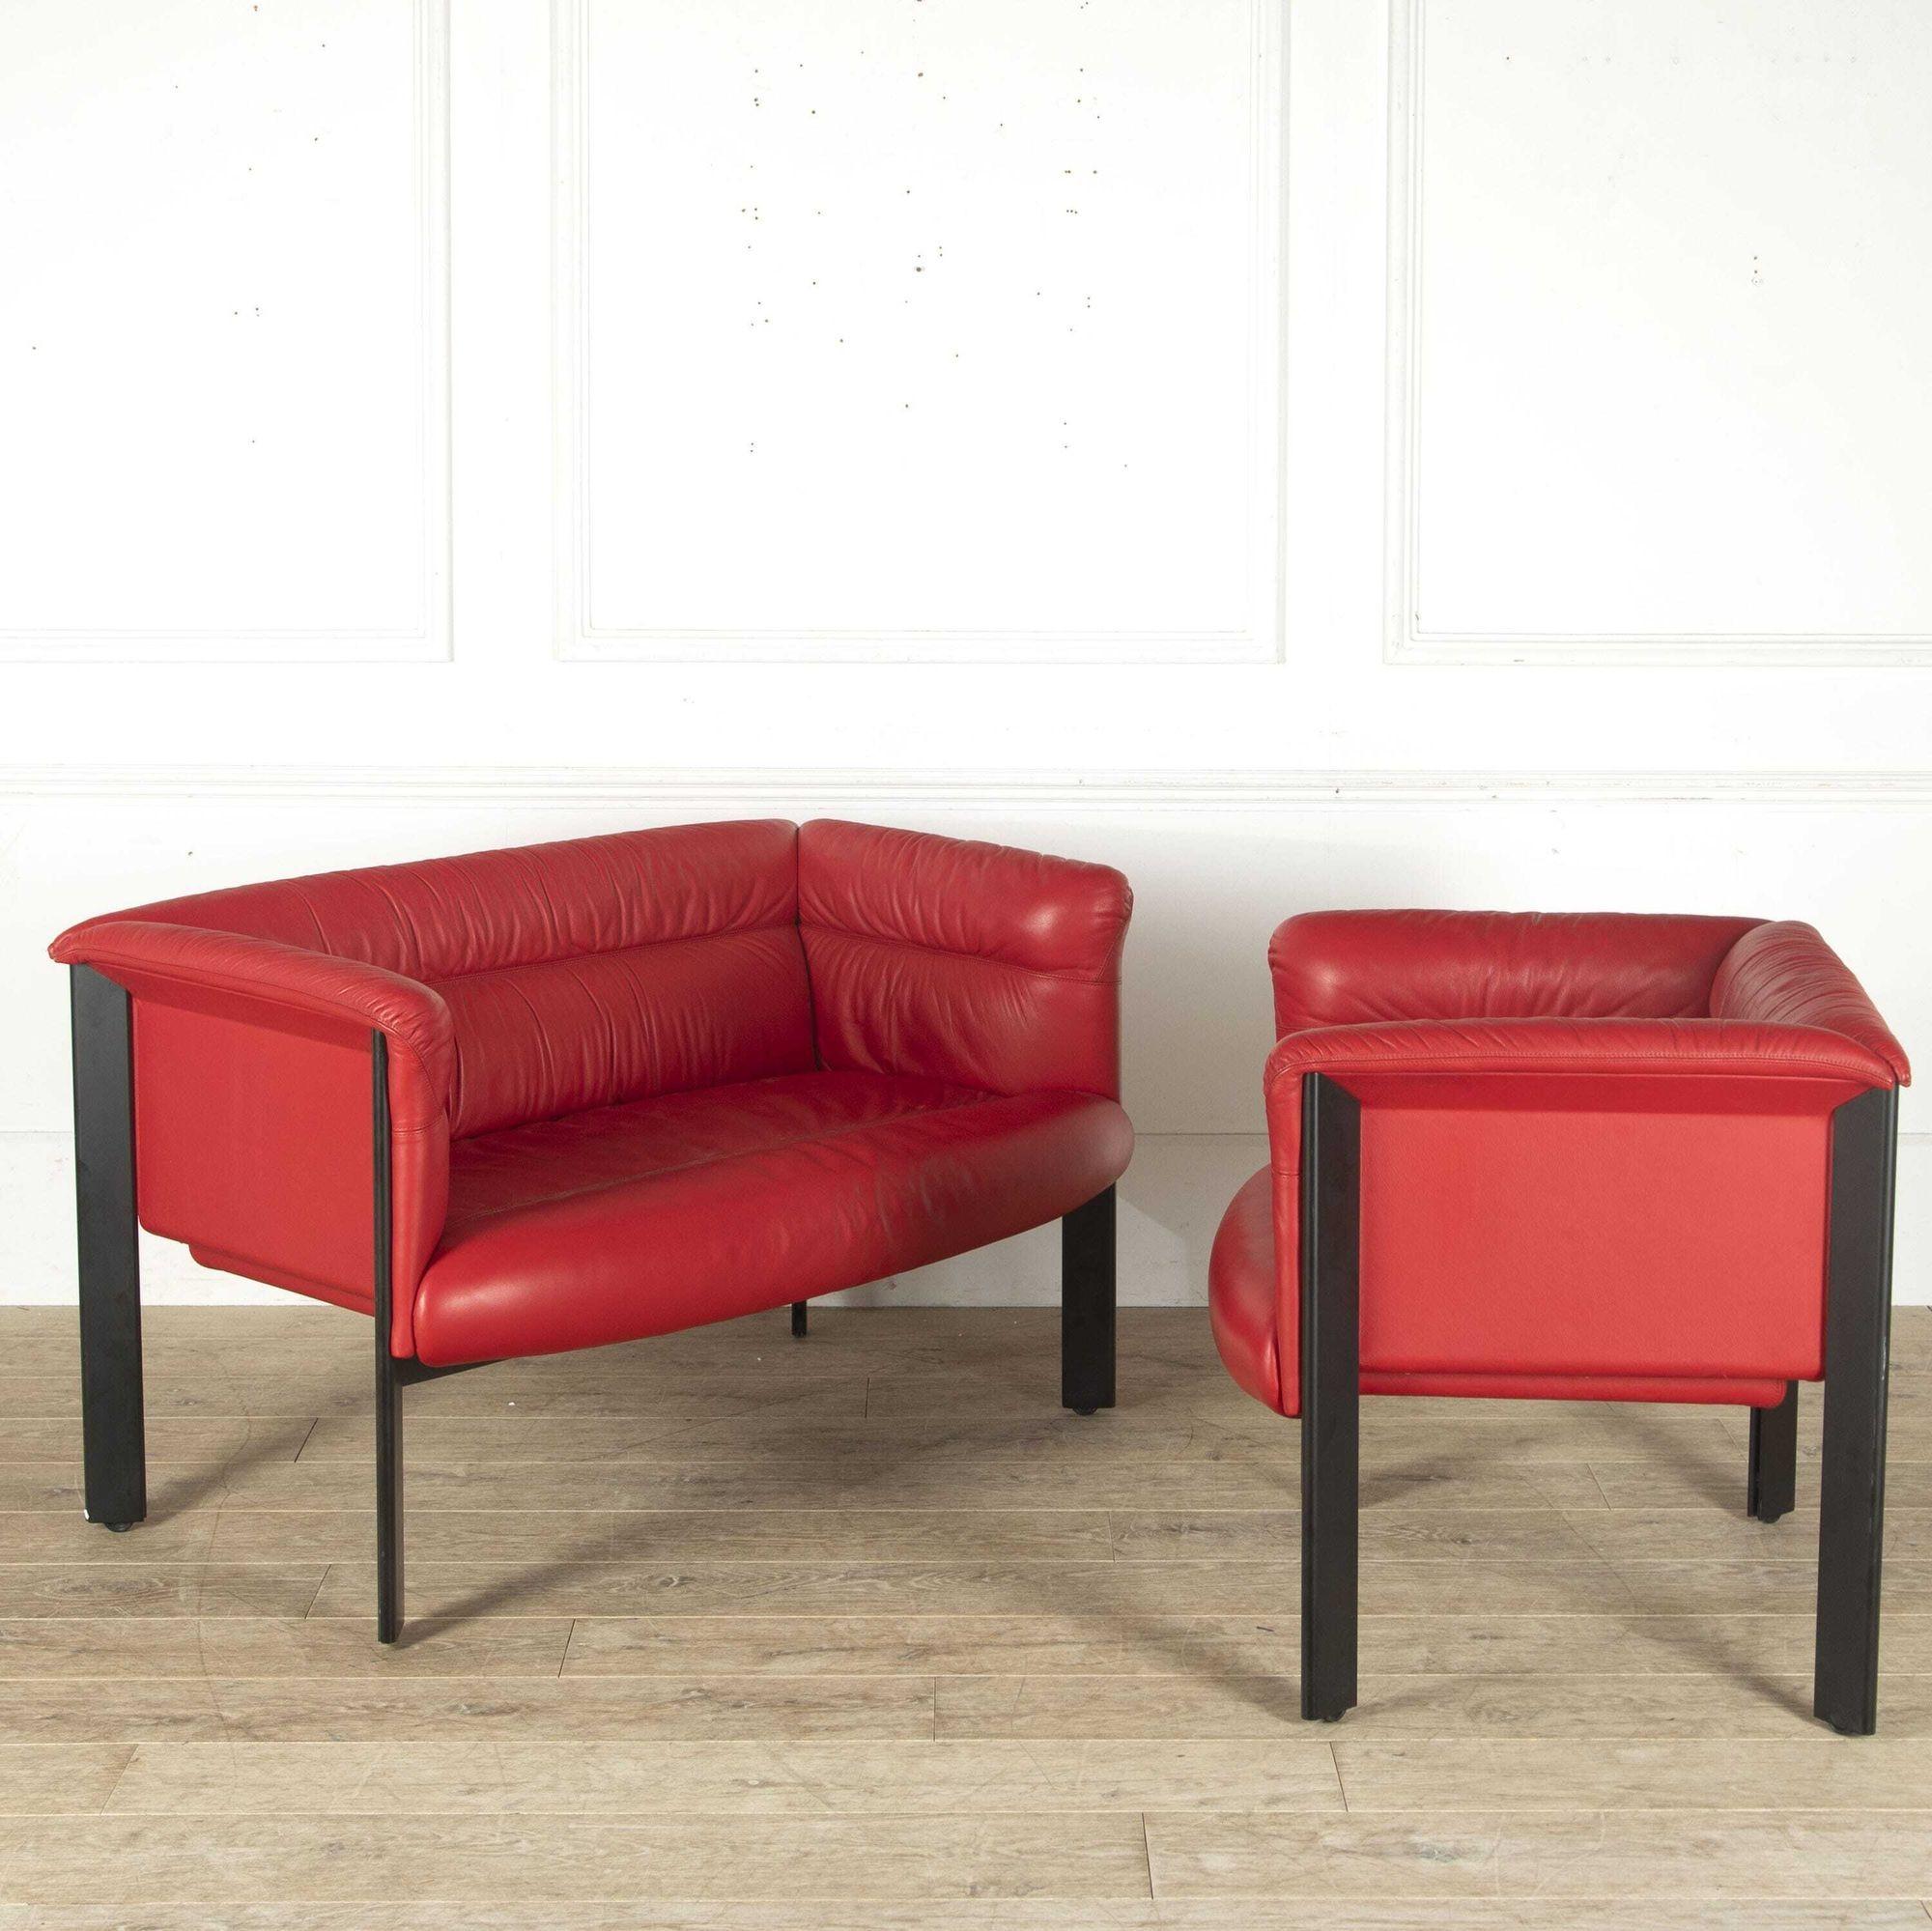 Loungesitzgruppe von Marco Zanuso. Diese Garnitur besteht aus zwei zweisitzigen Sofas und einem Paar Sesseln. 
Bei diesen Stühlen handelt es sich um das Modell 'Interlude', das Ende der 1980er Jahre von Zanuso entworfen wurde. Die Entwürfe sollten